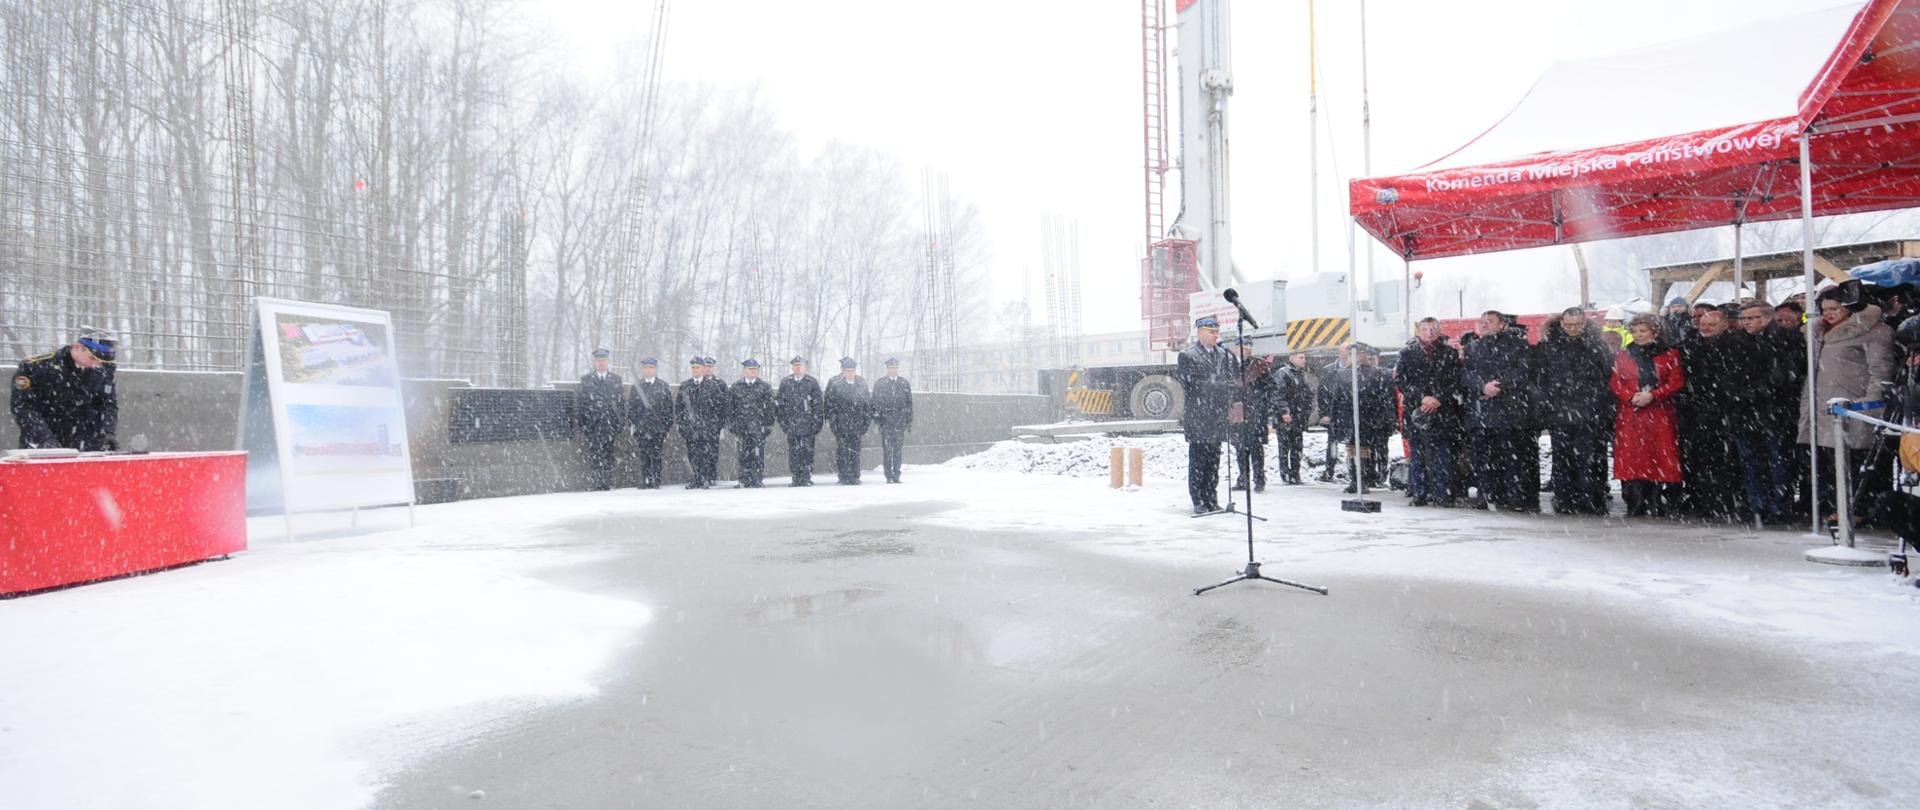 Uroczystość wmurowania kamienia węgielnego pod nową komendę straży pożarnej w Rudzie Śląskiej.